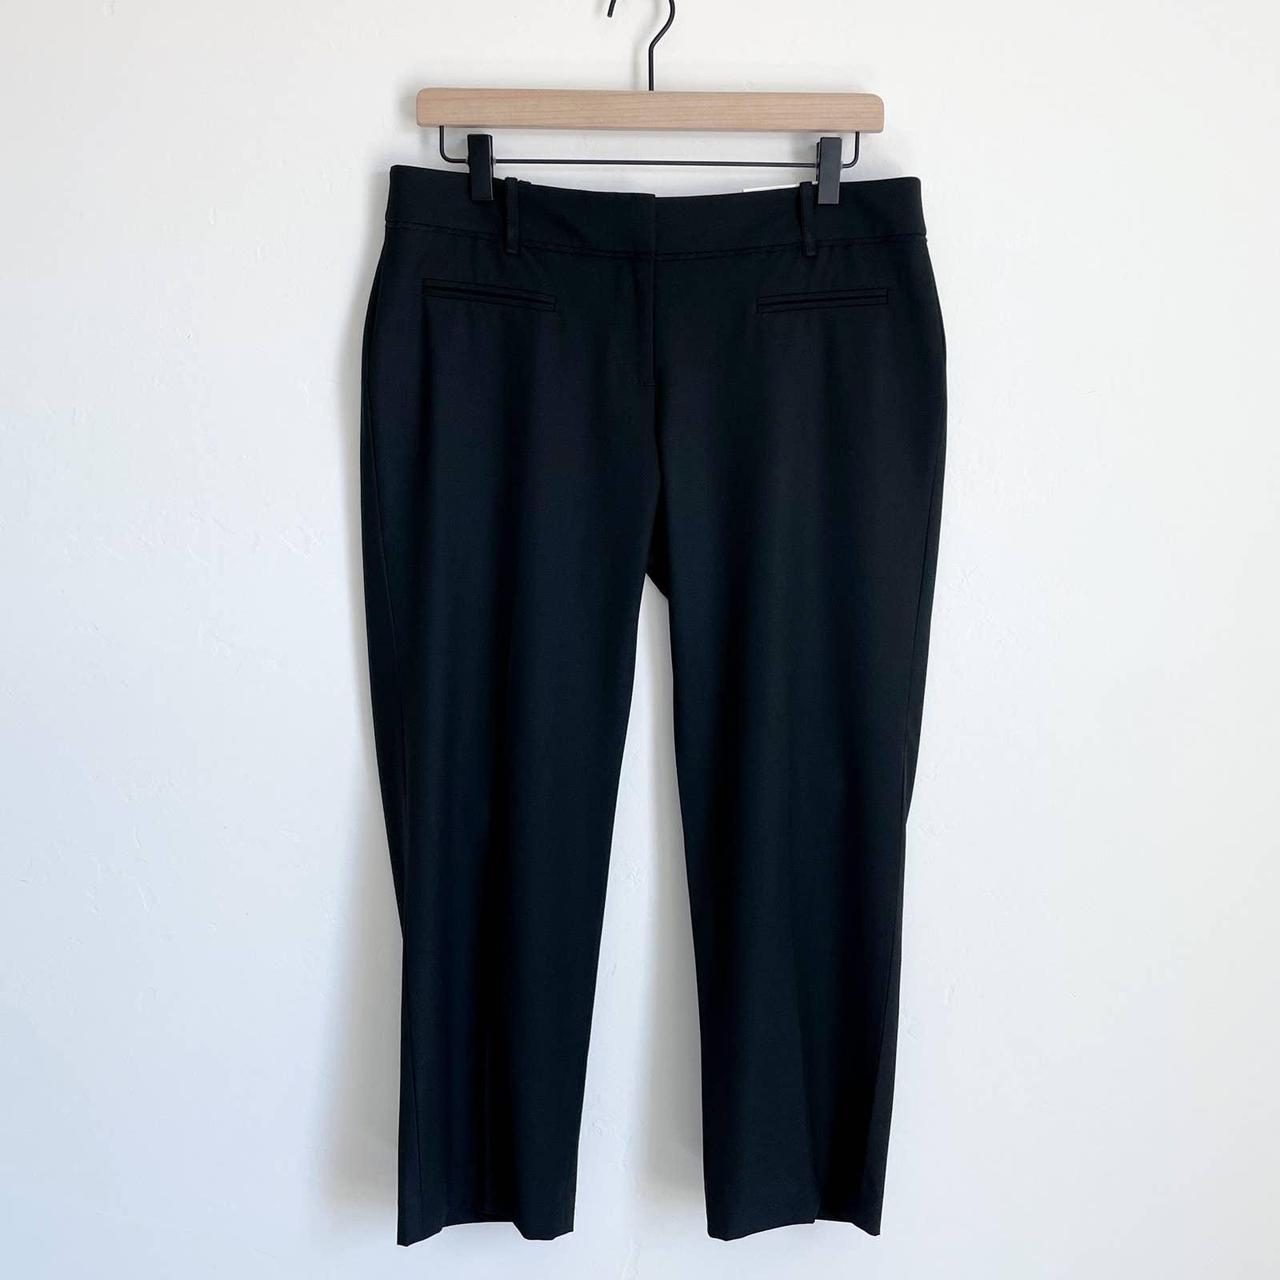 loft tan marisa trouser pants 4 short (Q) | eBay